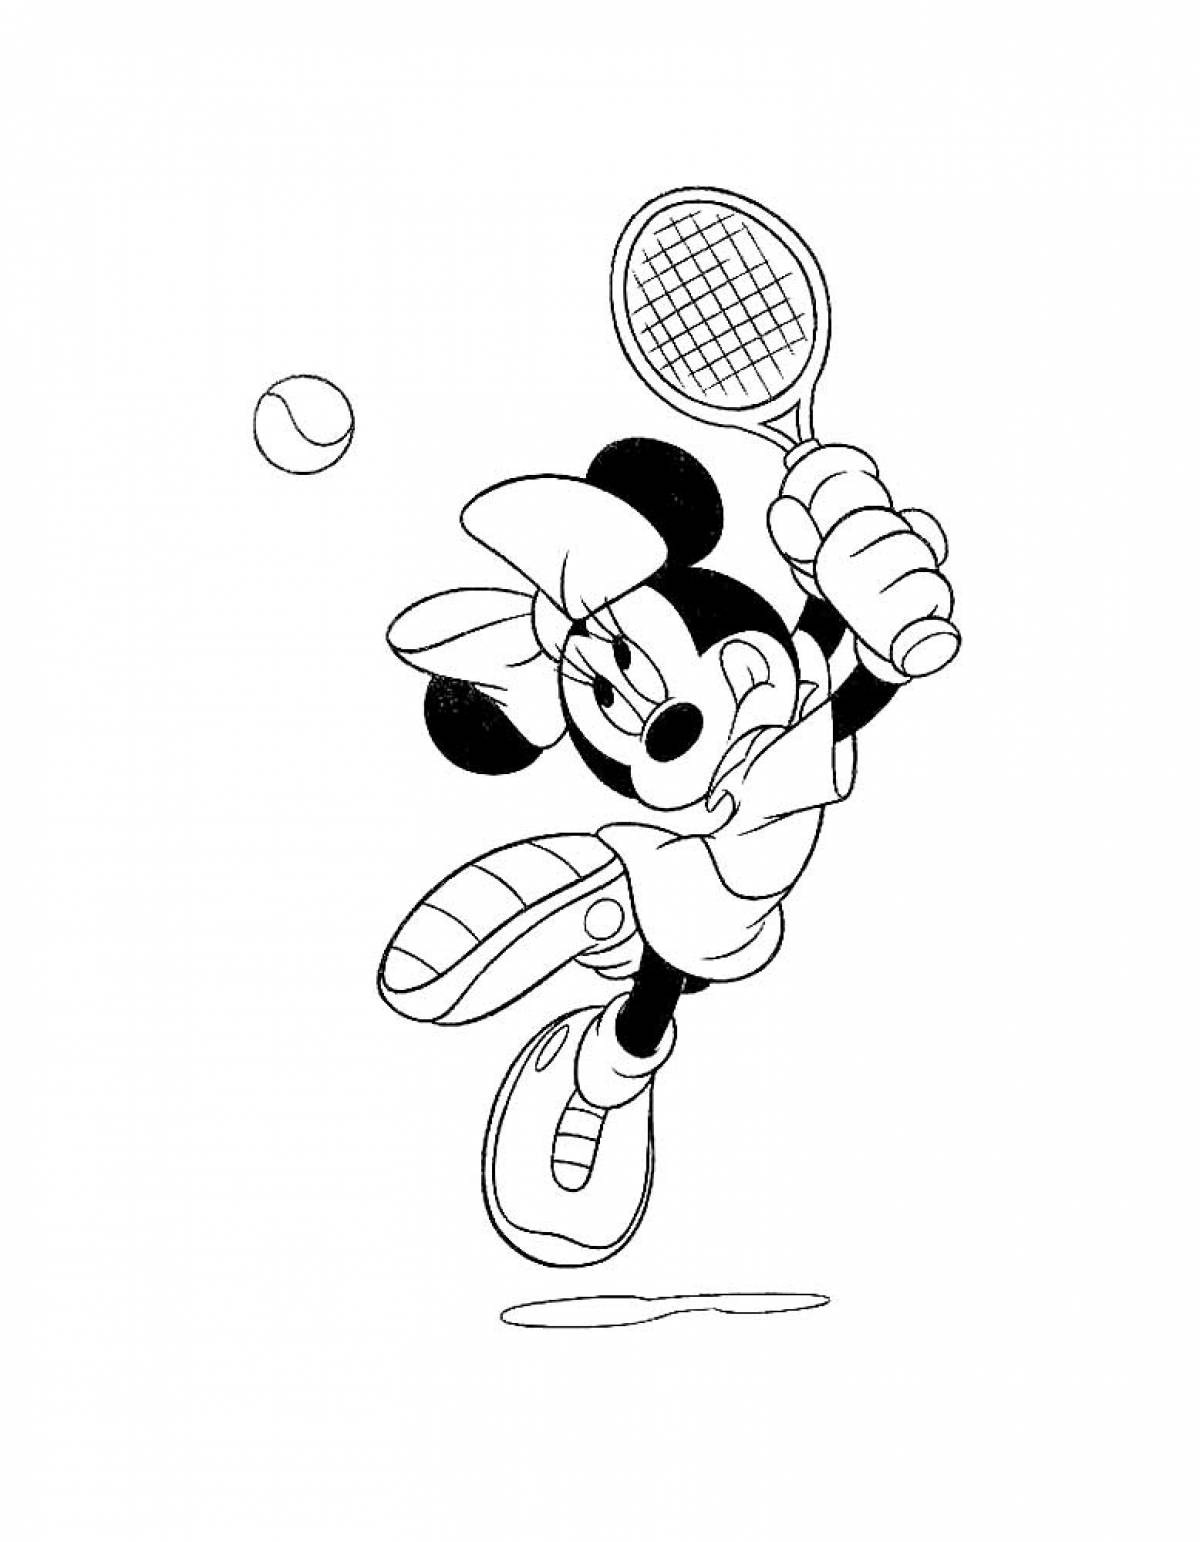 Minnie plays tennis